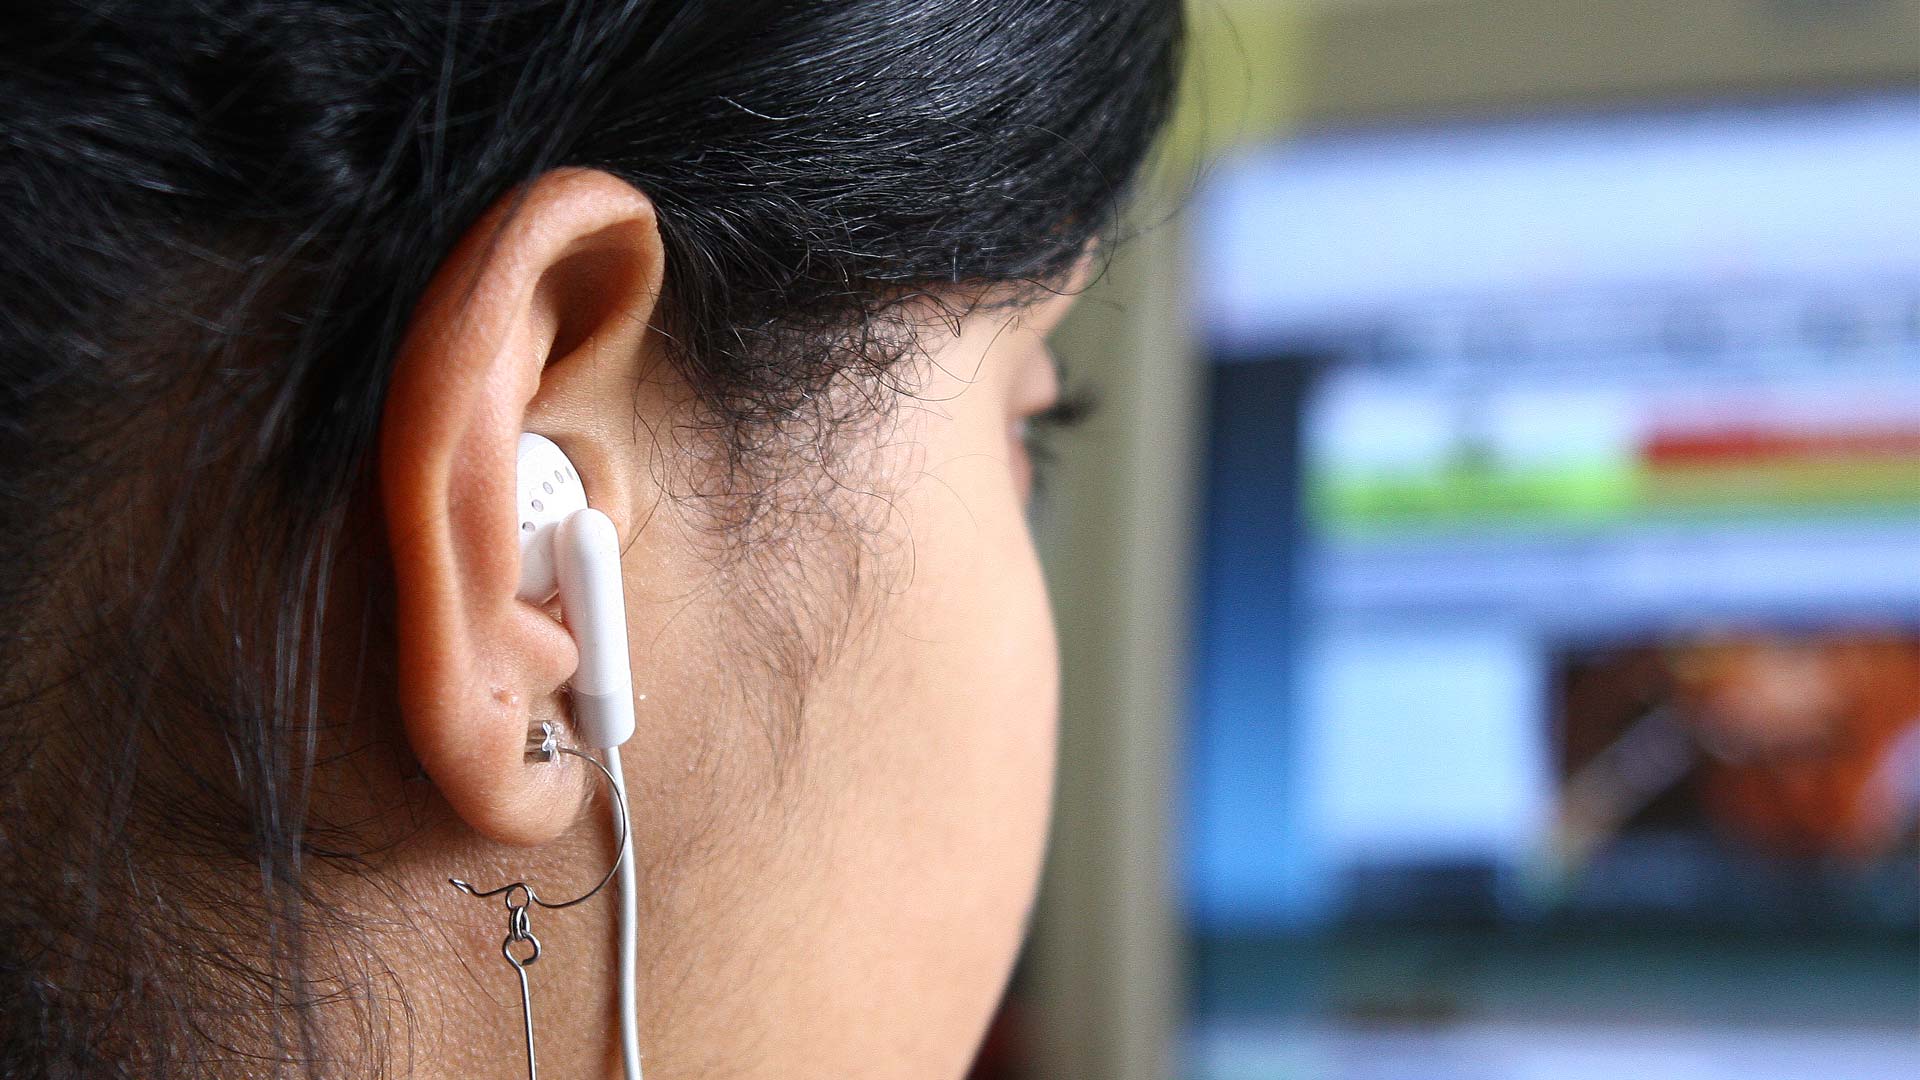 Uso incorreto do fone de ouvido prejudica audição (Marcos Santos/ USP Imagens)